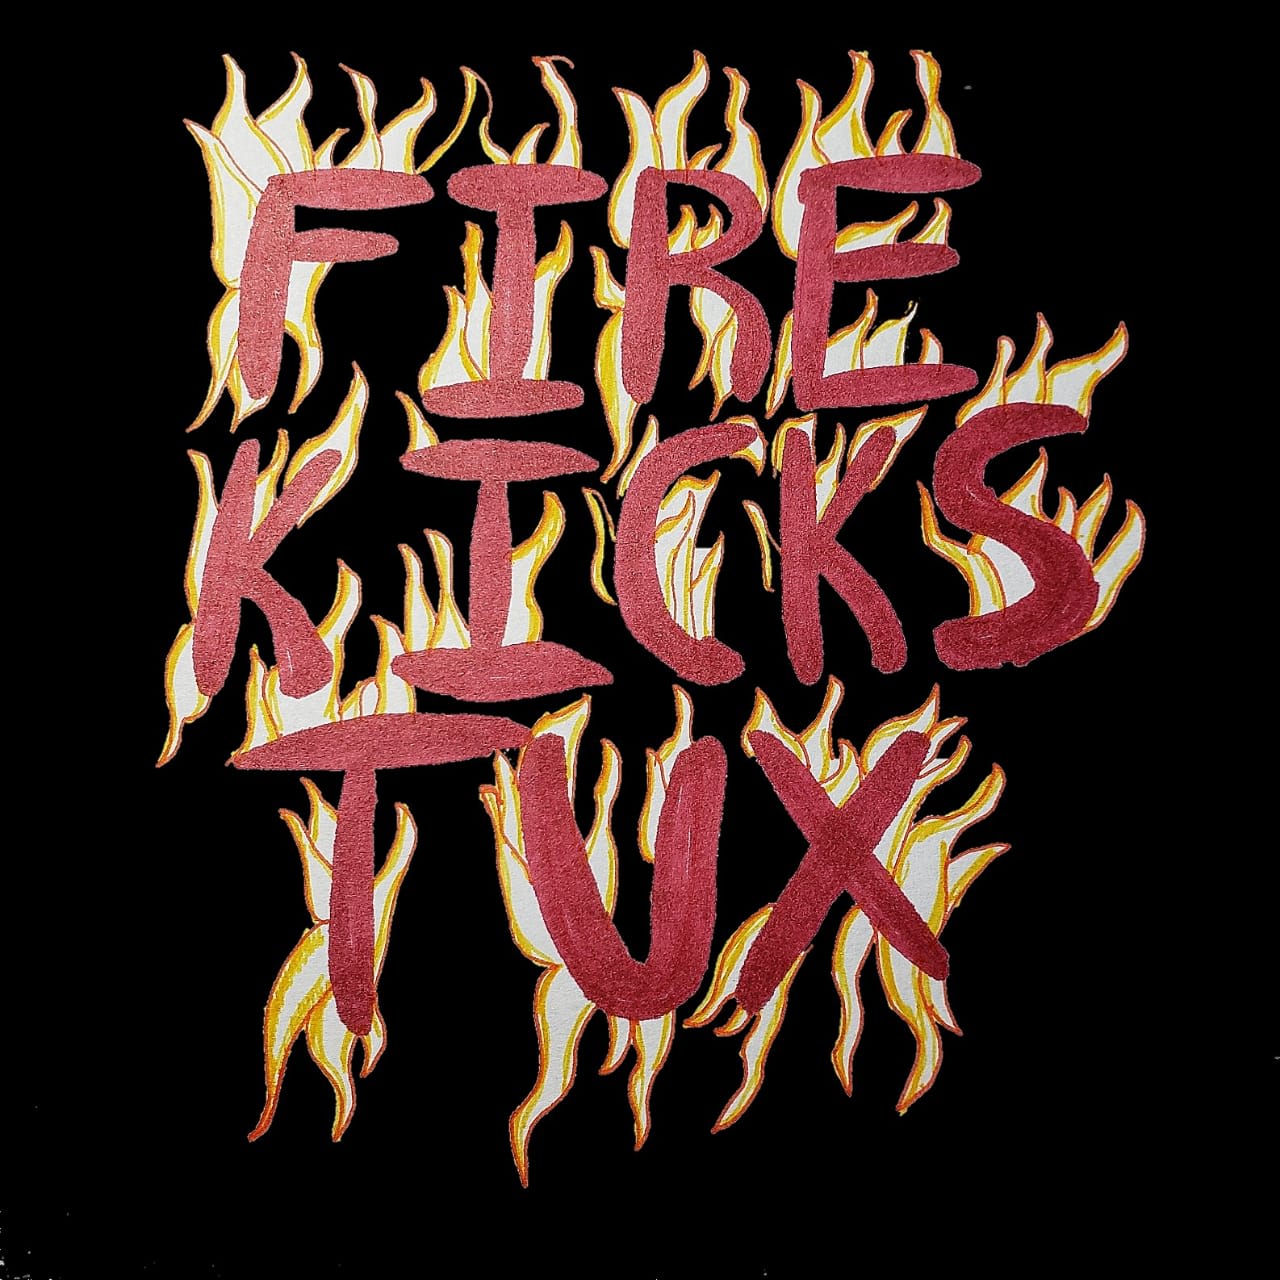 Firekickstux